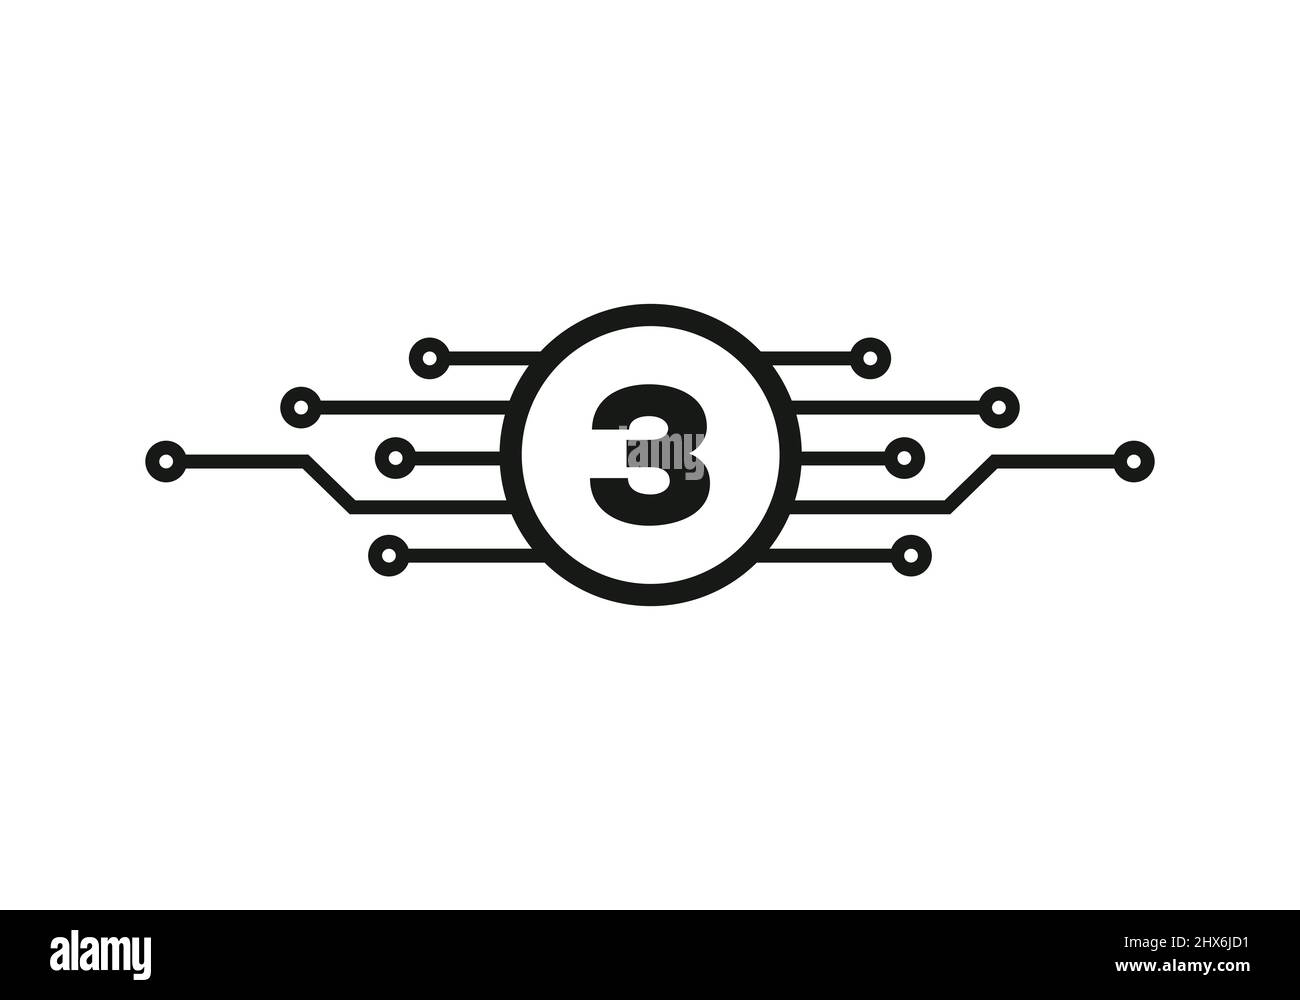 Modèle de logo Letter 3. 3 lettre pour la protection du logo Cyber, la technologie, la biotechnologie et la haute technologie. Logo réseau Illustration de Vecteur